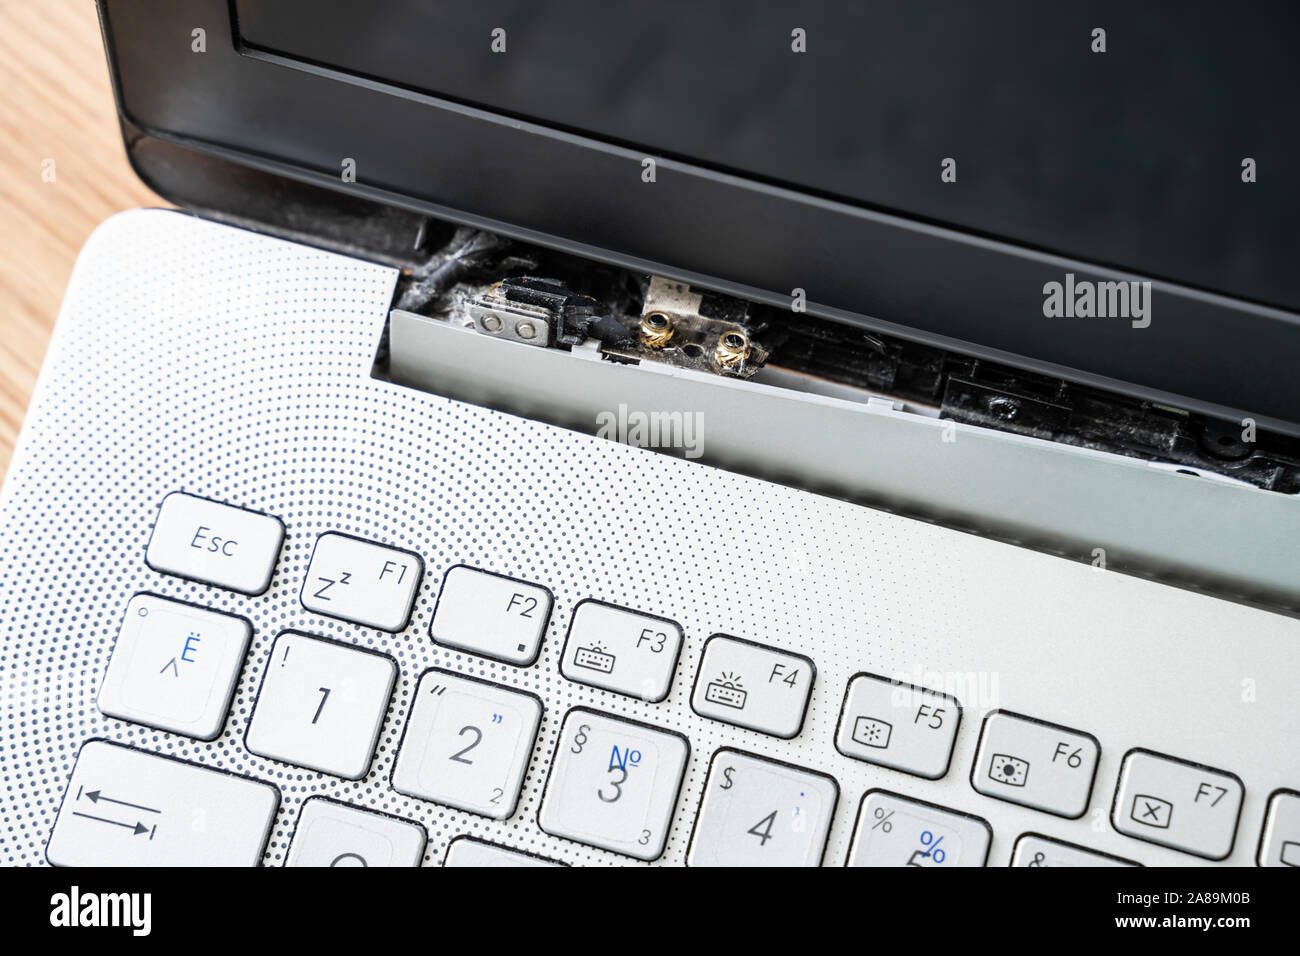 Beschädigte Laptop mit defektem Bildschirm Anlage Stockfoto